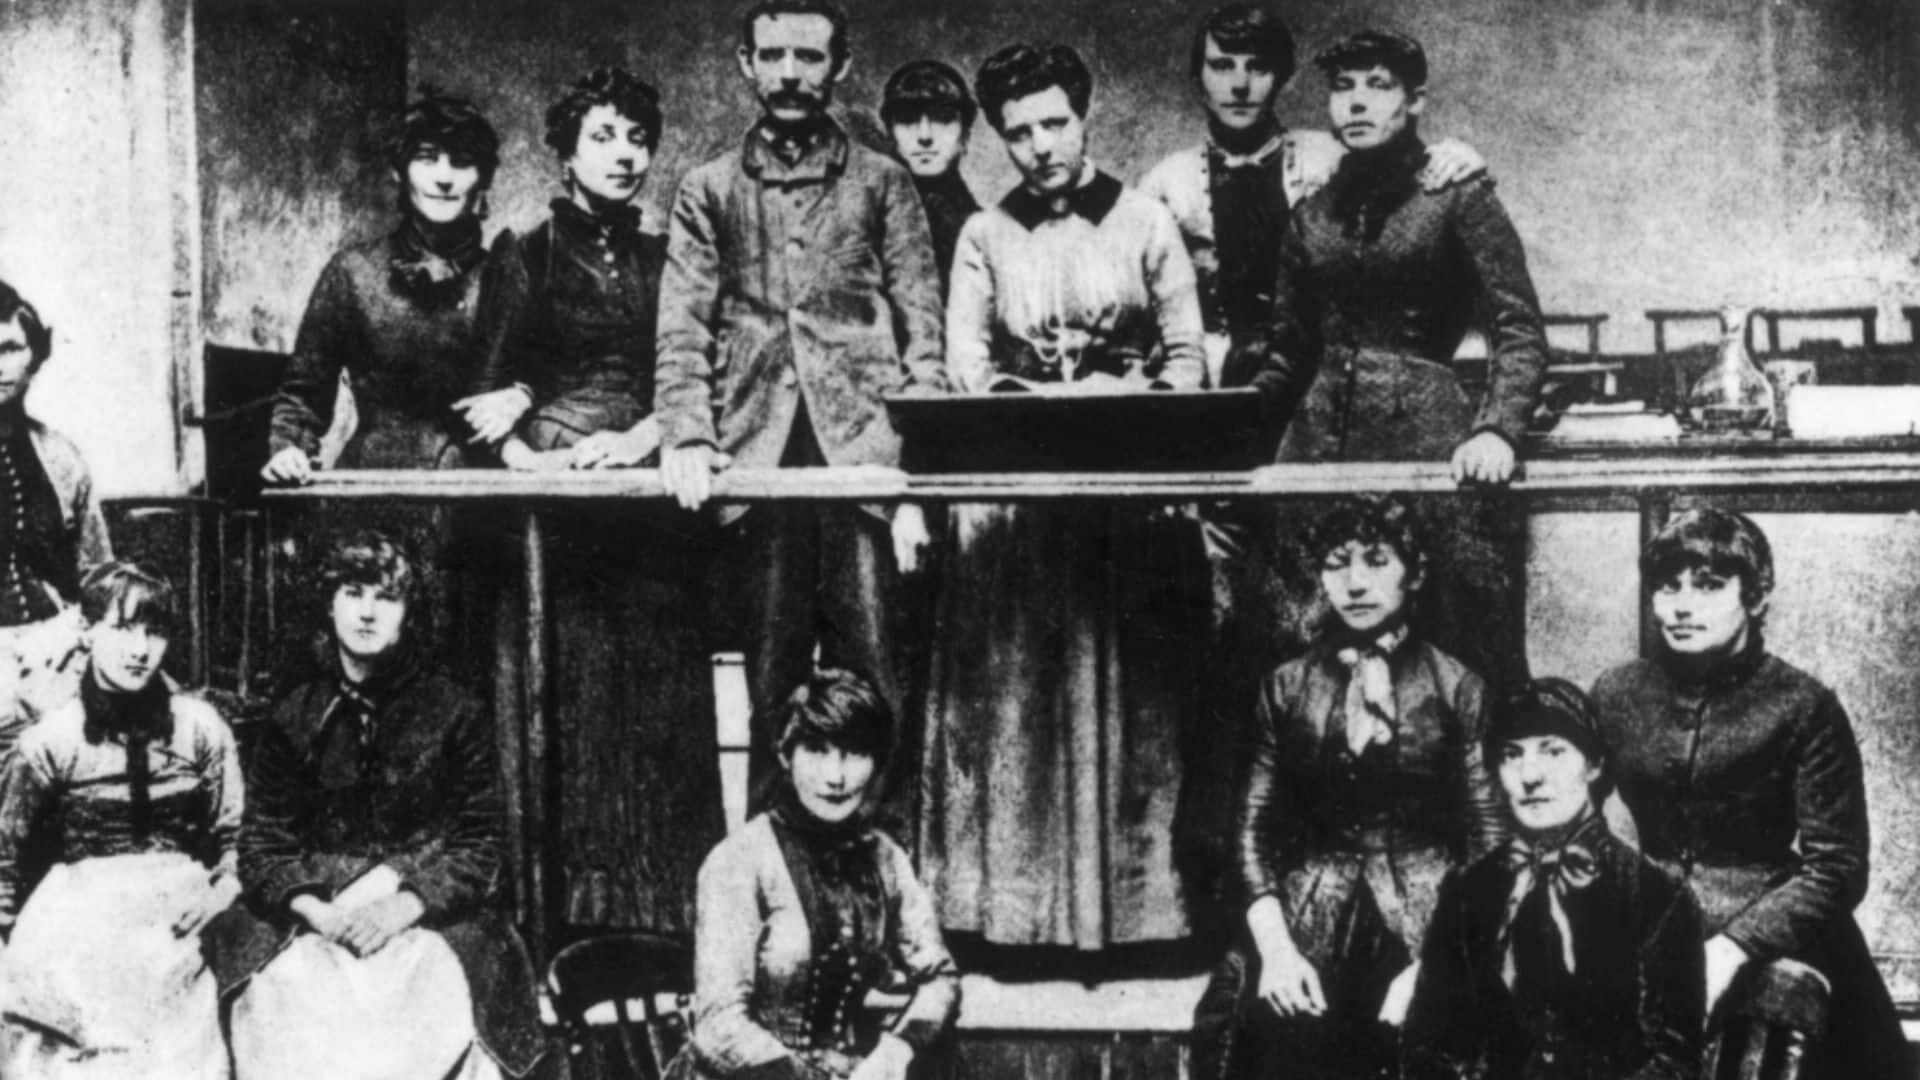 odwazne kobiety z zapalkami upamietnienie strajku 1400 kobiet z 1888 roku w wielkiej brytanii